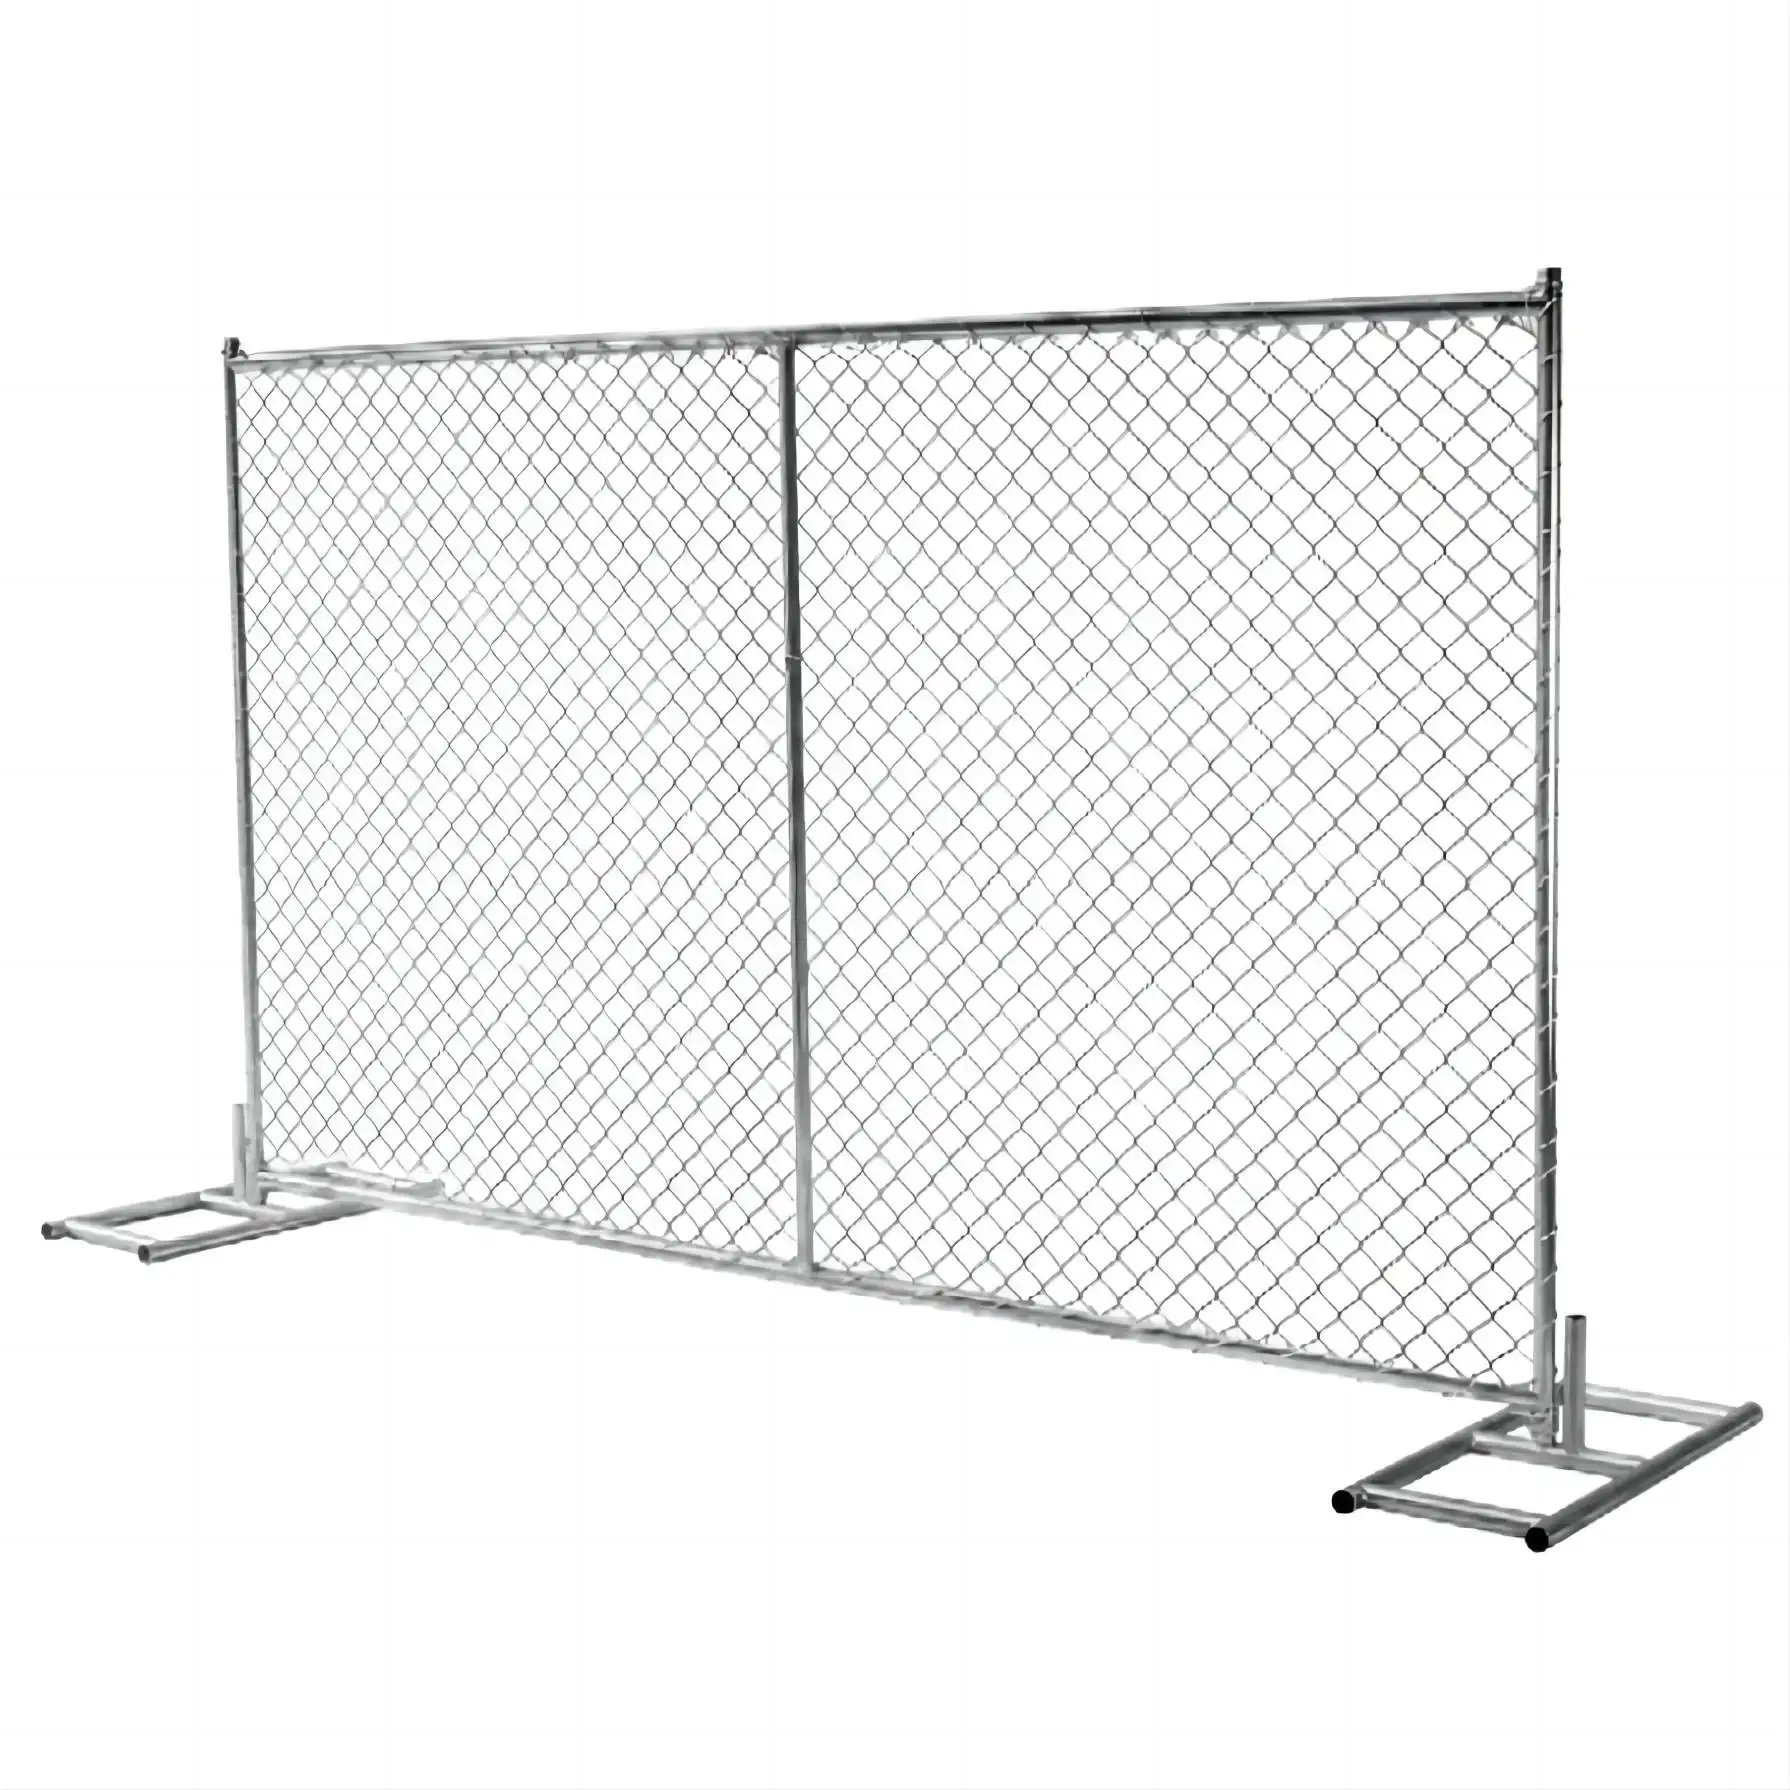 Heavy duty zincato collegamento a catena temporanea recinzione temporanea recinzione impermeabile america collegamento a catena recinzione per parco giochi